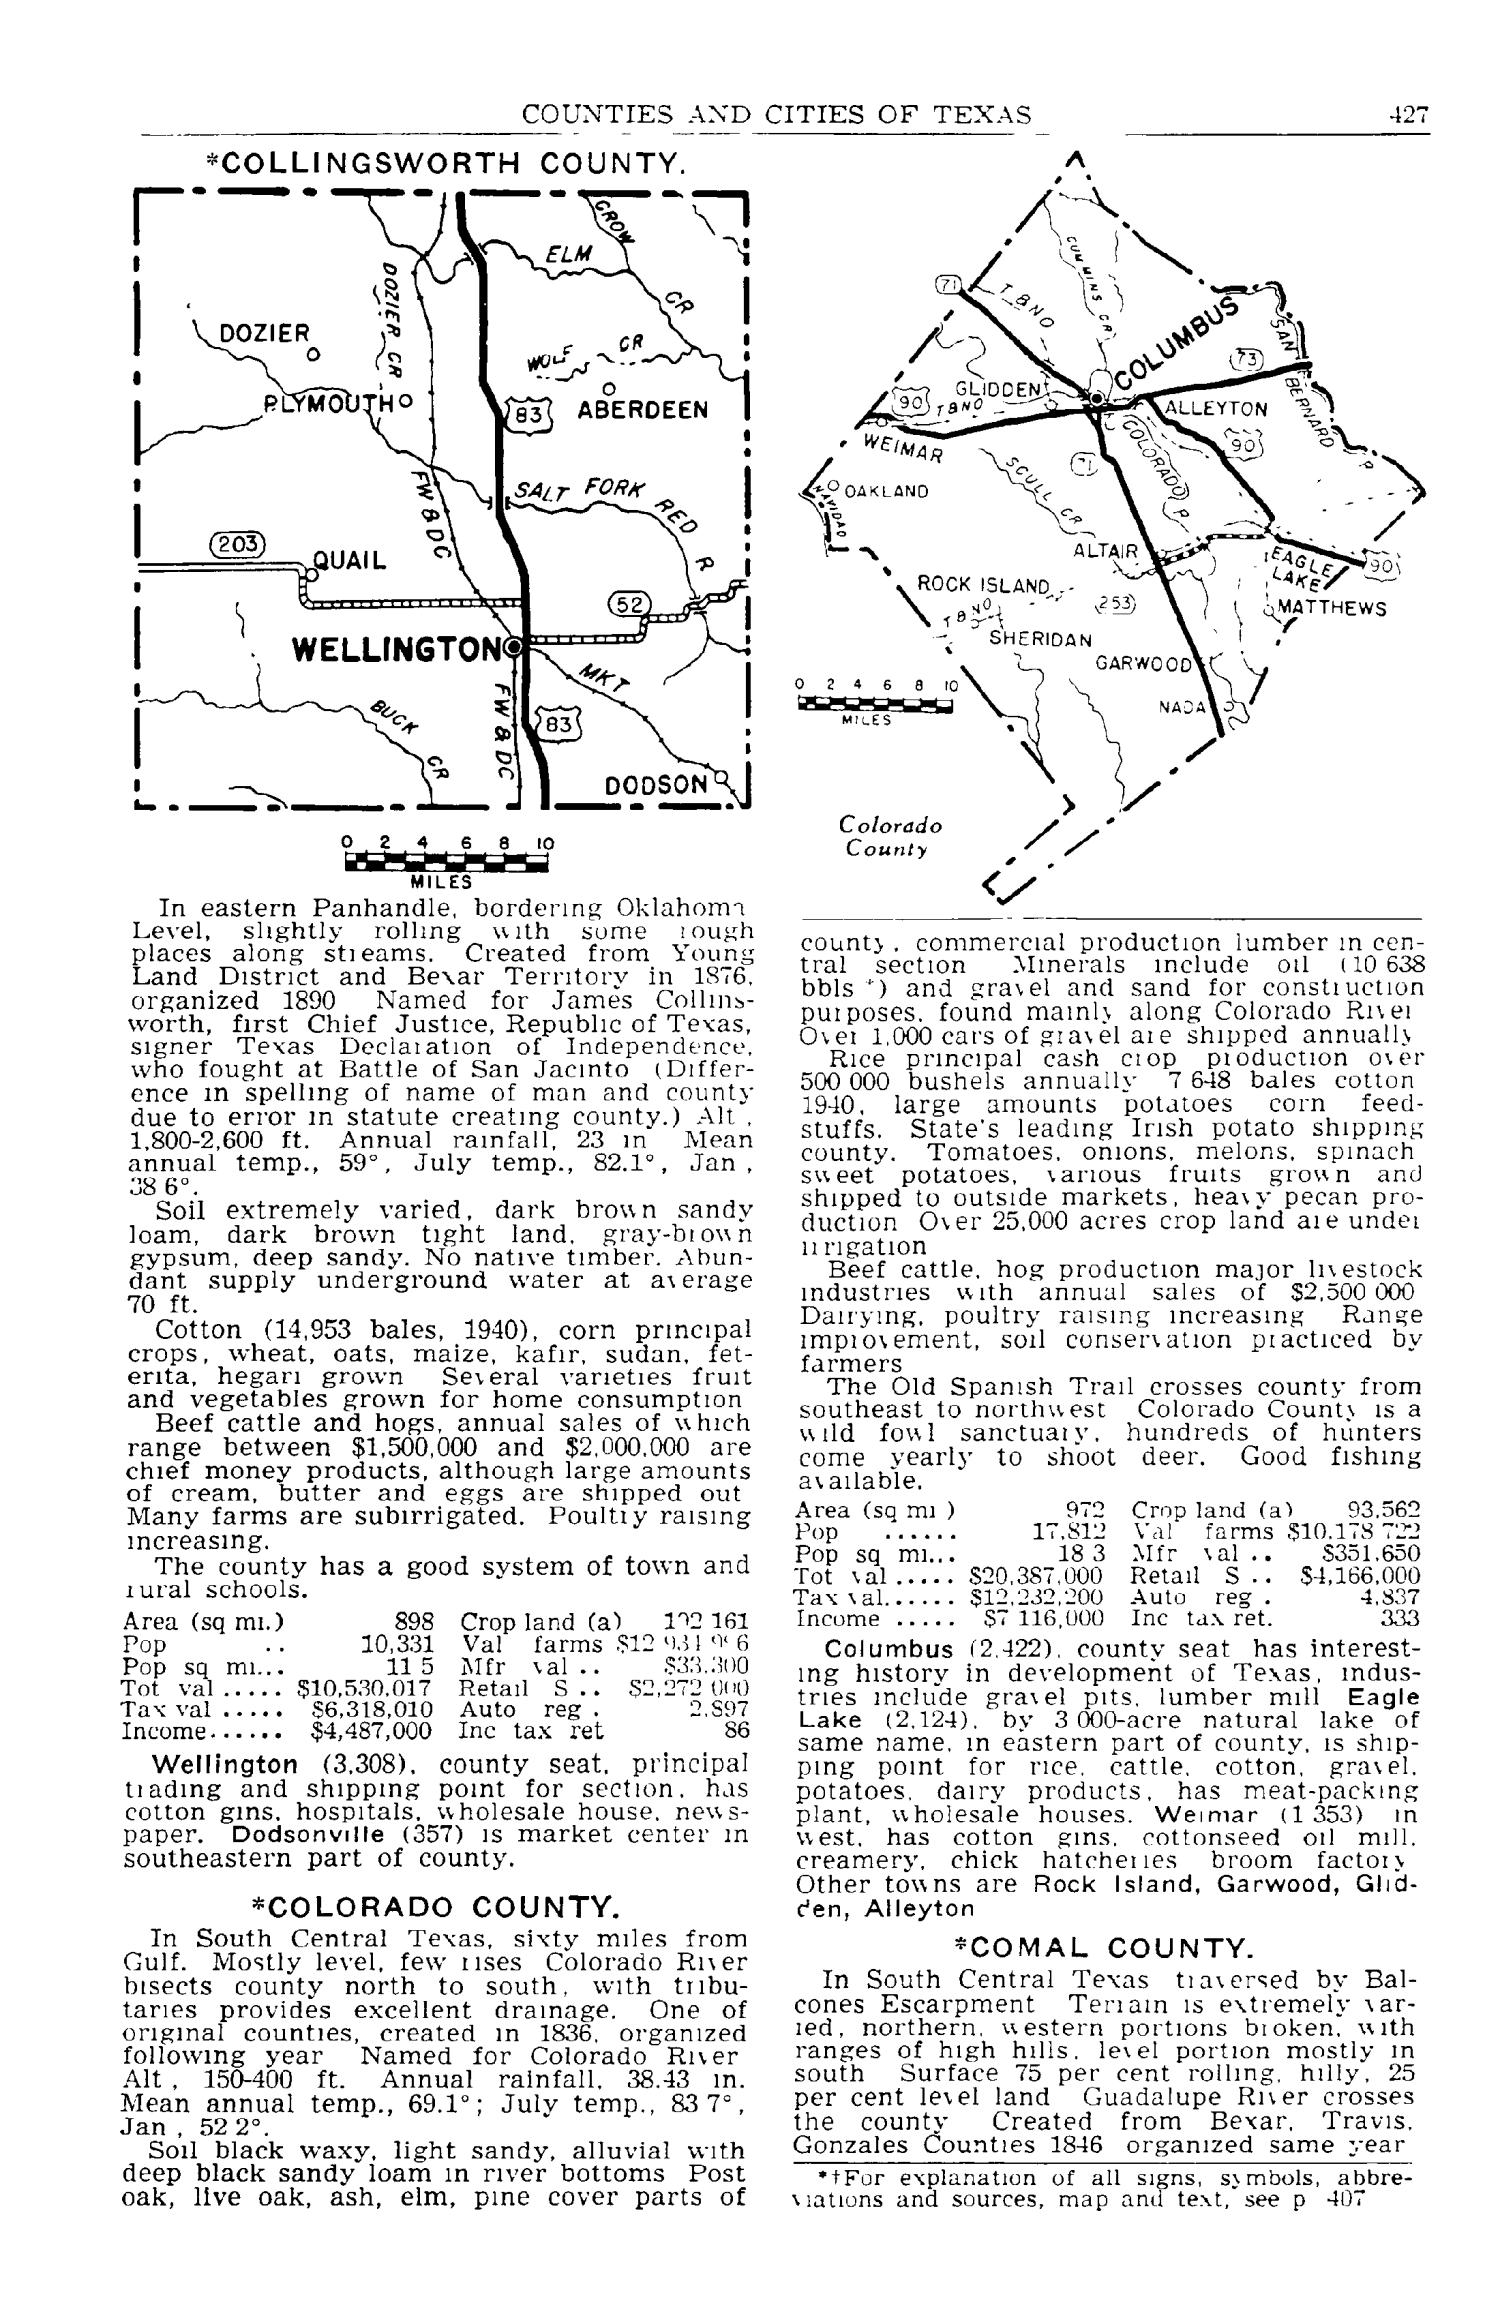 Texas Almanac, 1941-1942
                                                
                                                    427
                                                